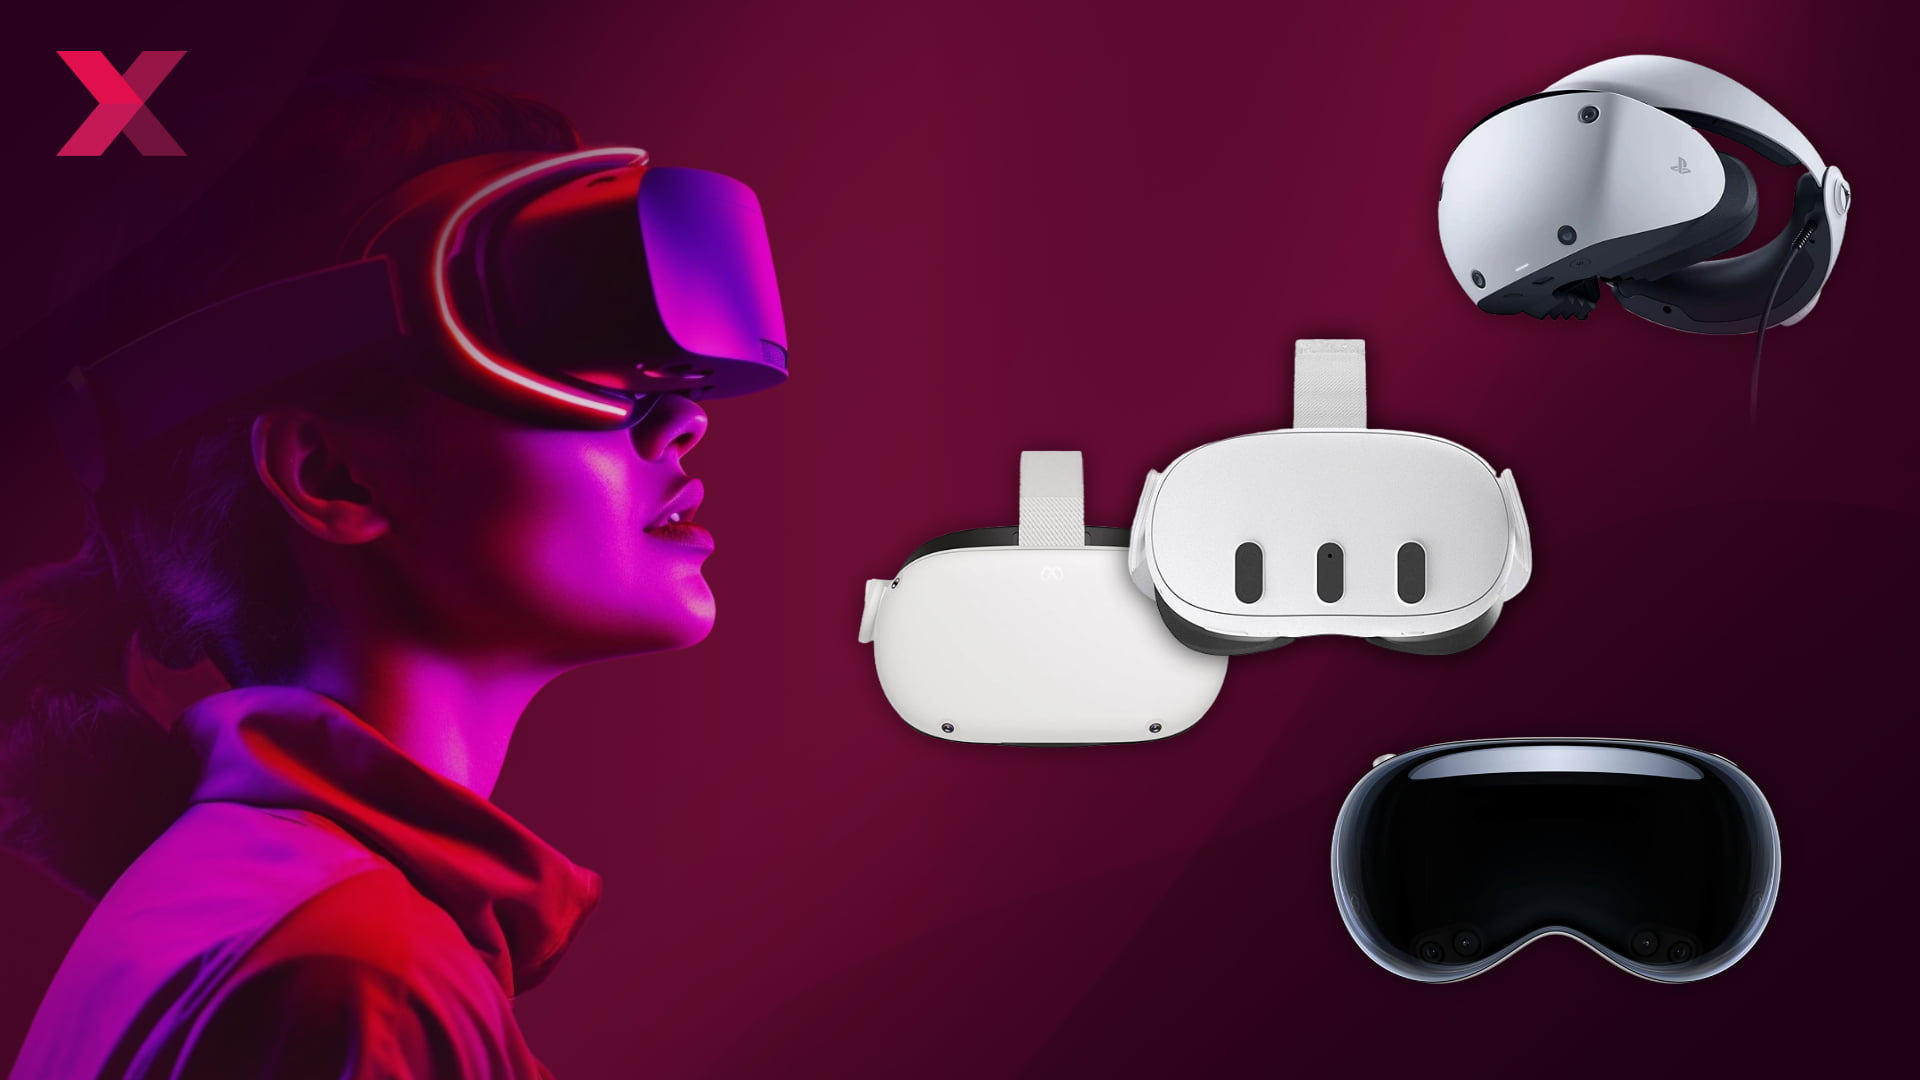 Frau im Profil mit futuristischer VR-Brille auf der linken Seite, rechts einige aktuelle VR/AR-Brillen